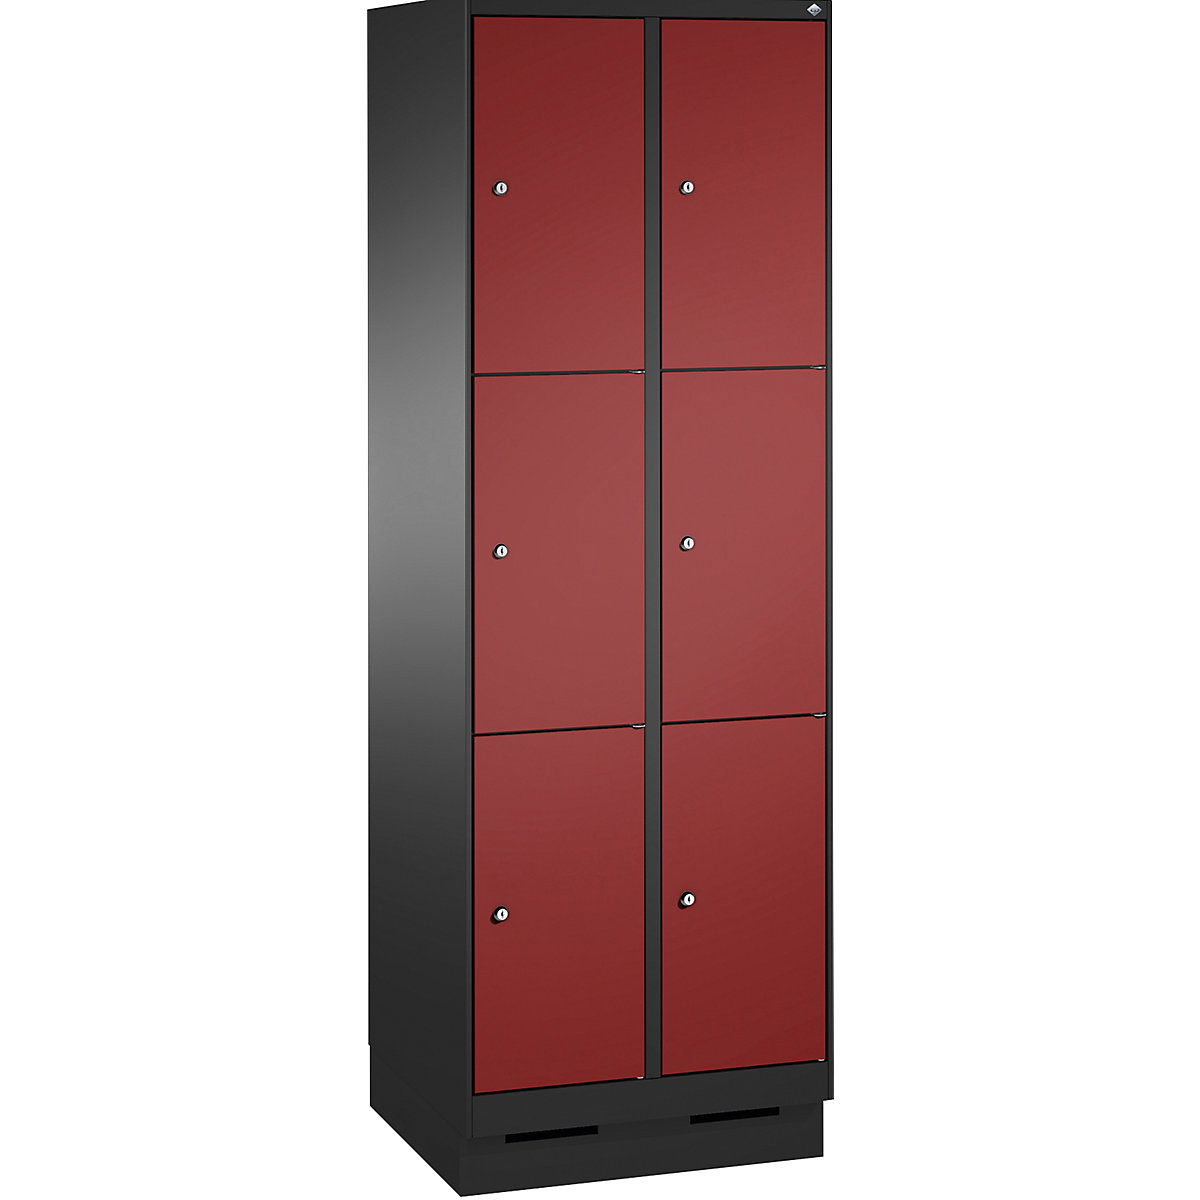 Armoire à casiers sur socle EVOLO – C+P, 2 compartiments, 3 casiers chacun, largeur compartiments 300 mm, gris noir / rouge rubis-8